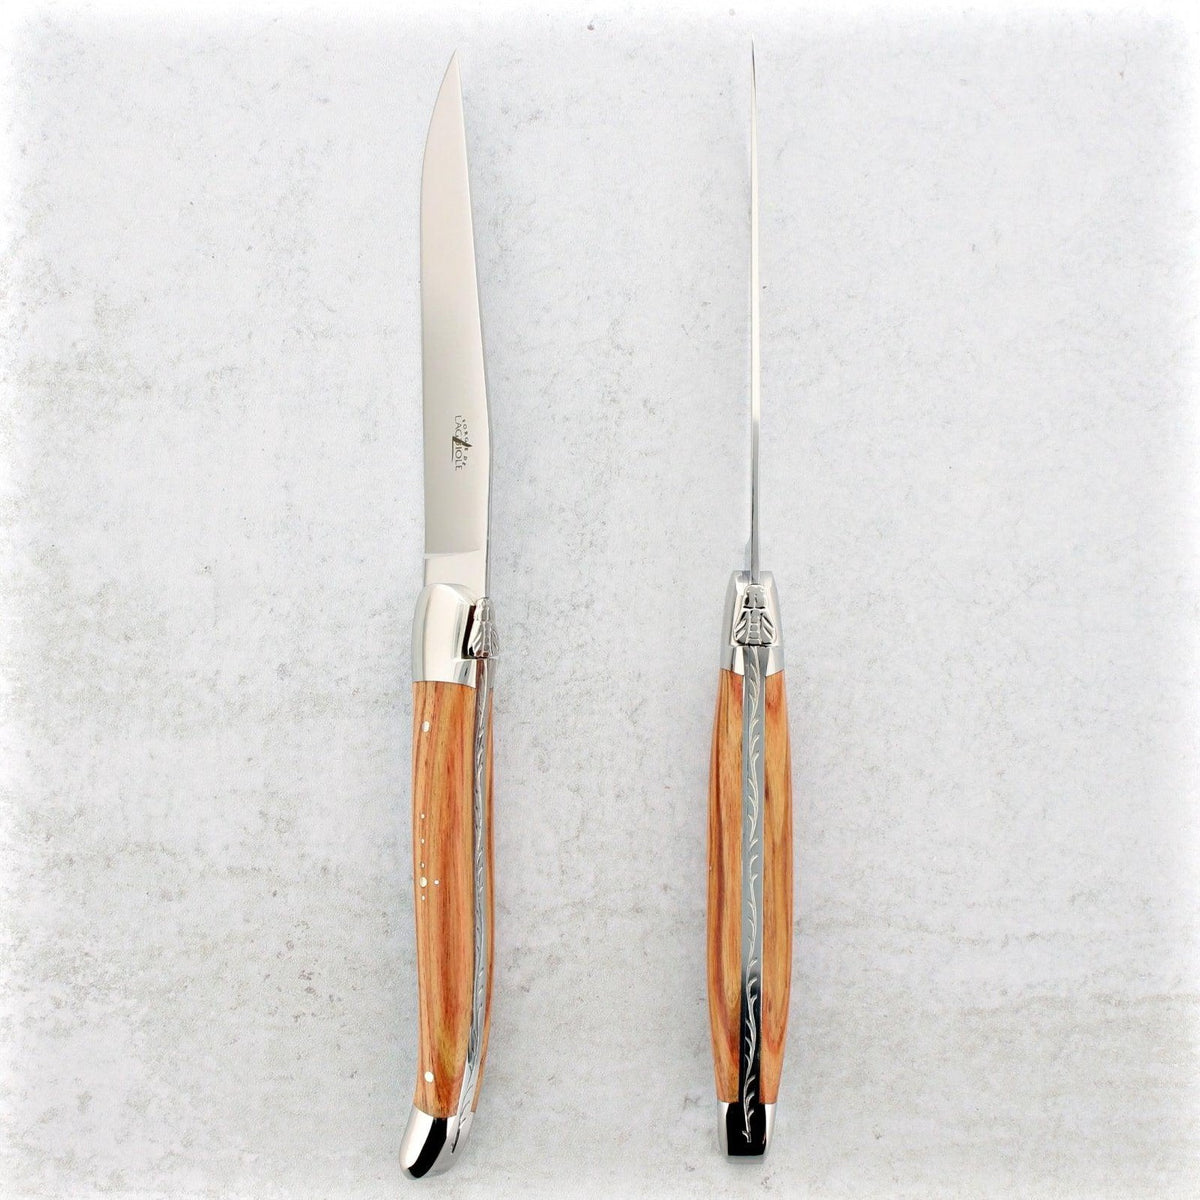 Forge de Laguiole Rosewood Steak Knives - Shiny